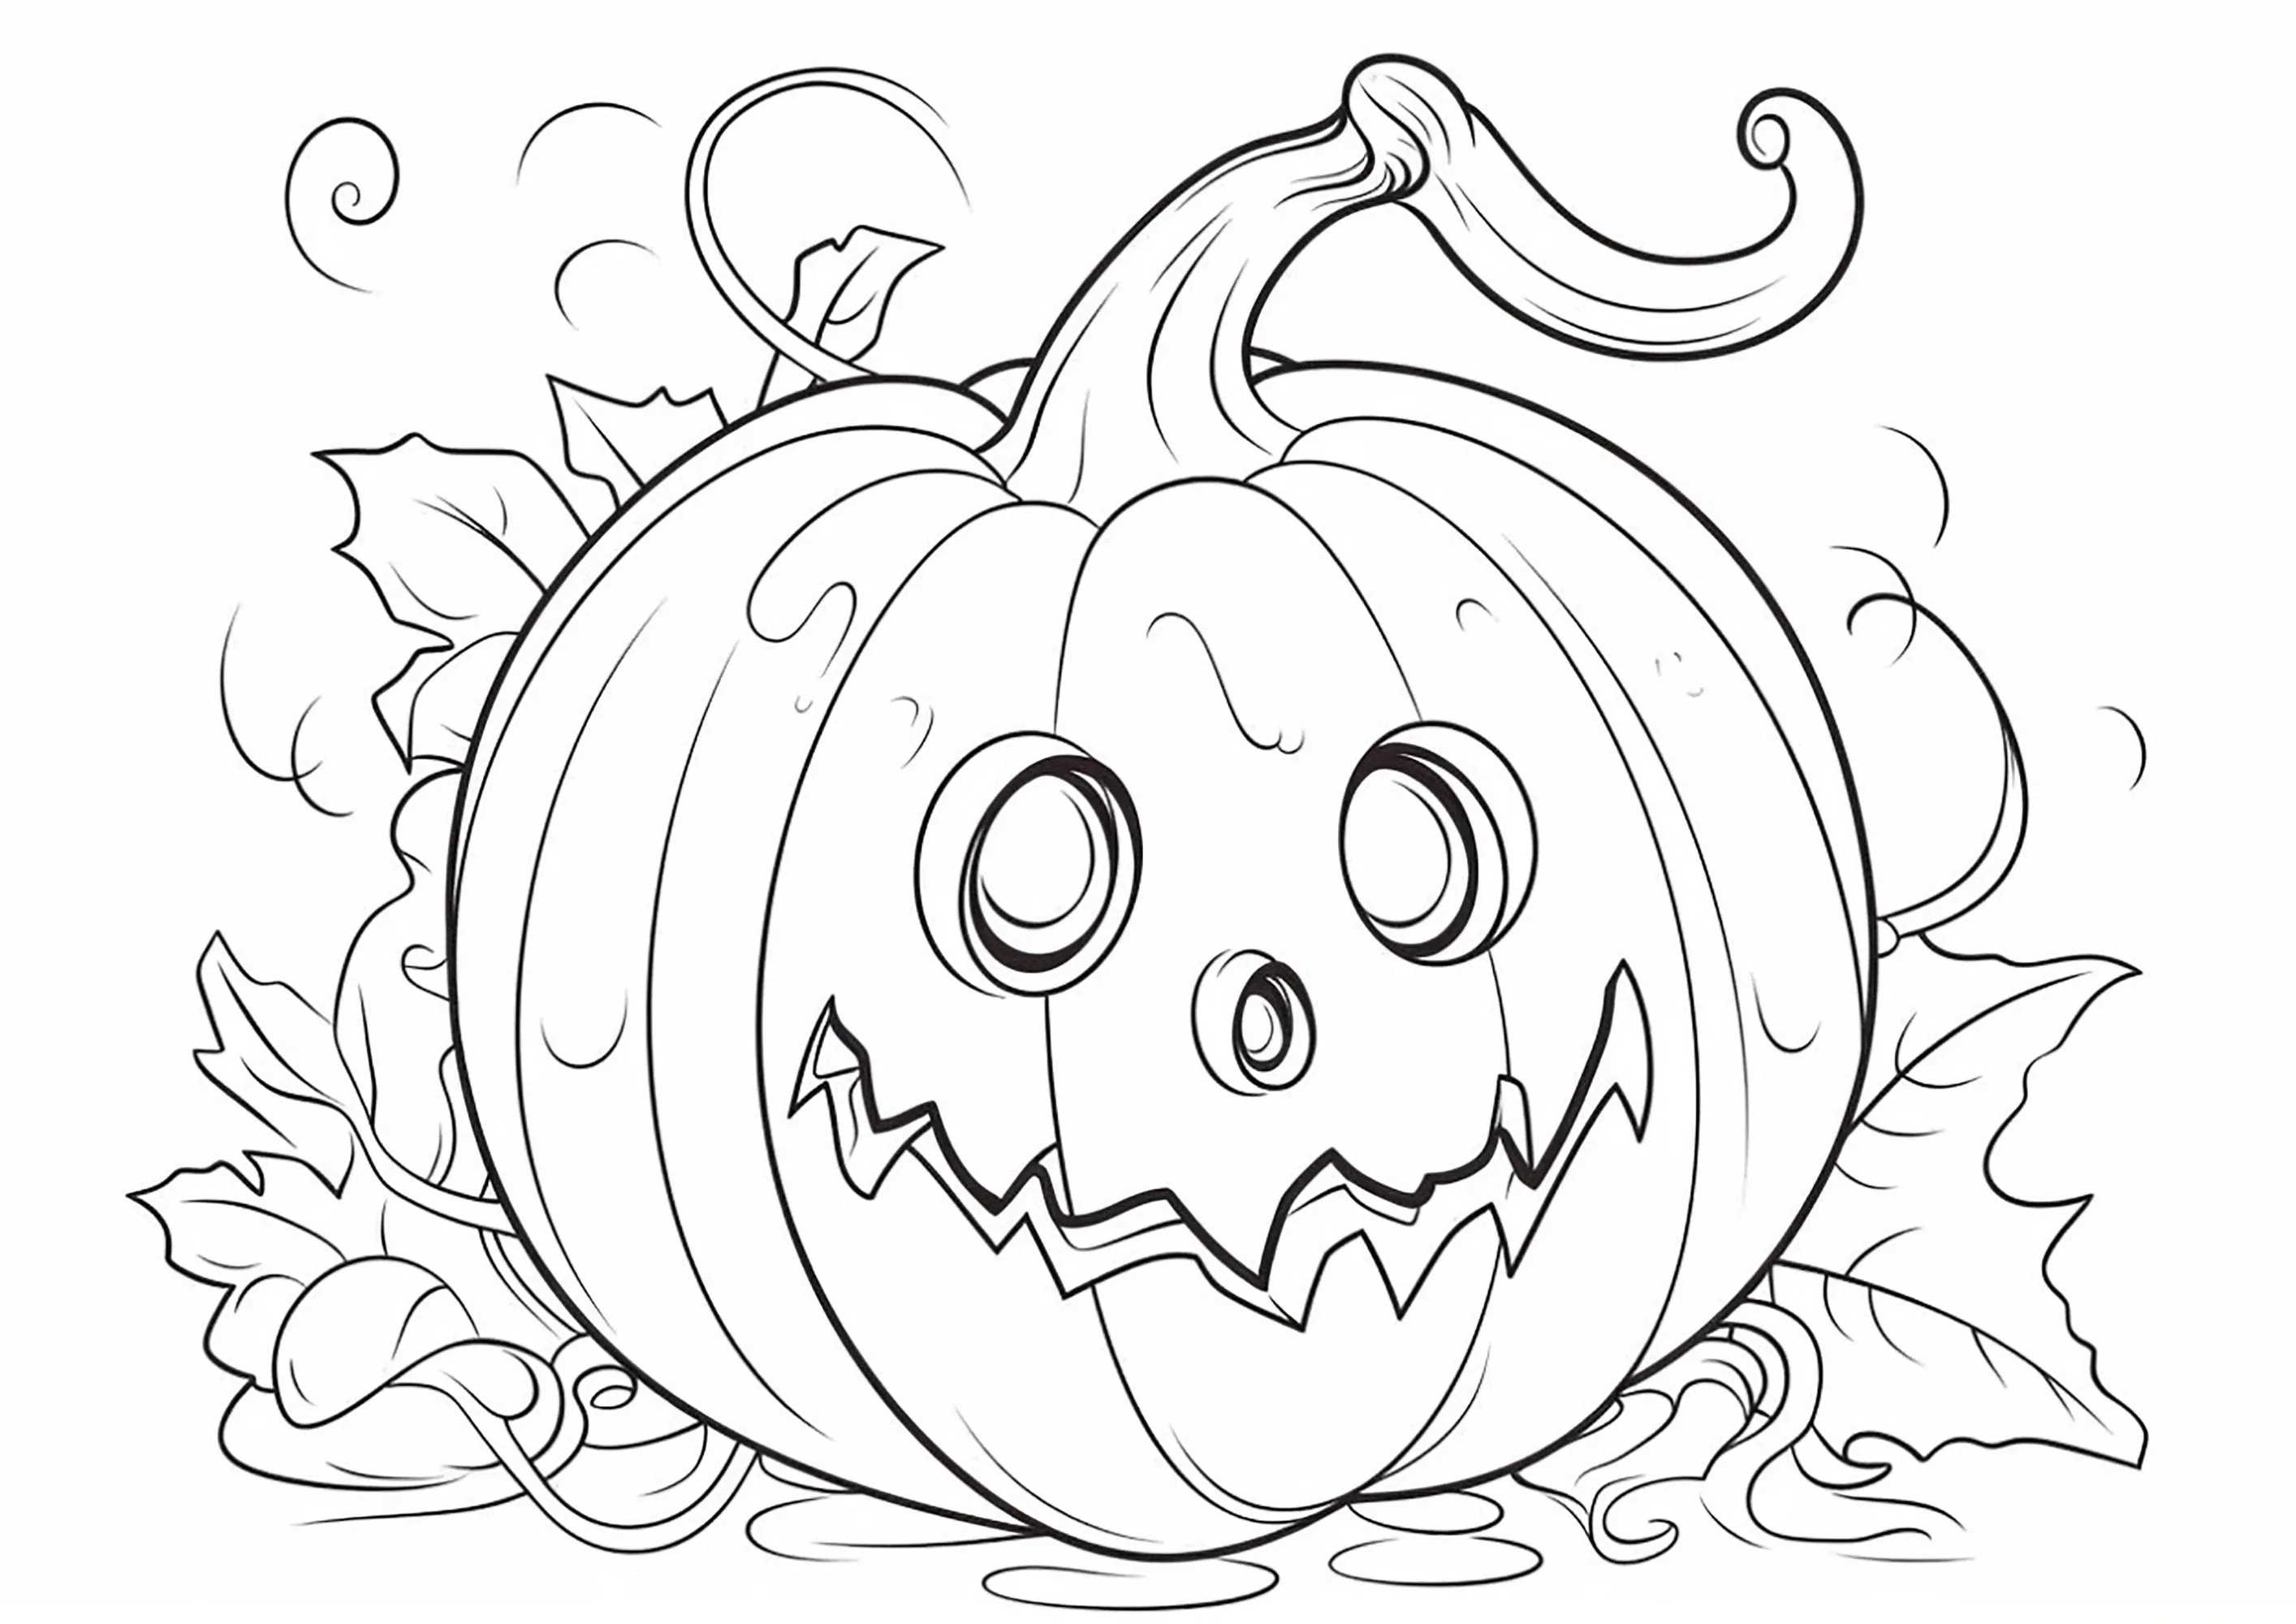 Terrorífica calabaza de Halloween, fácil de colorear - Halloween - Just  Color Niños : Dibujos para colorear para niños